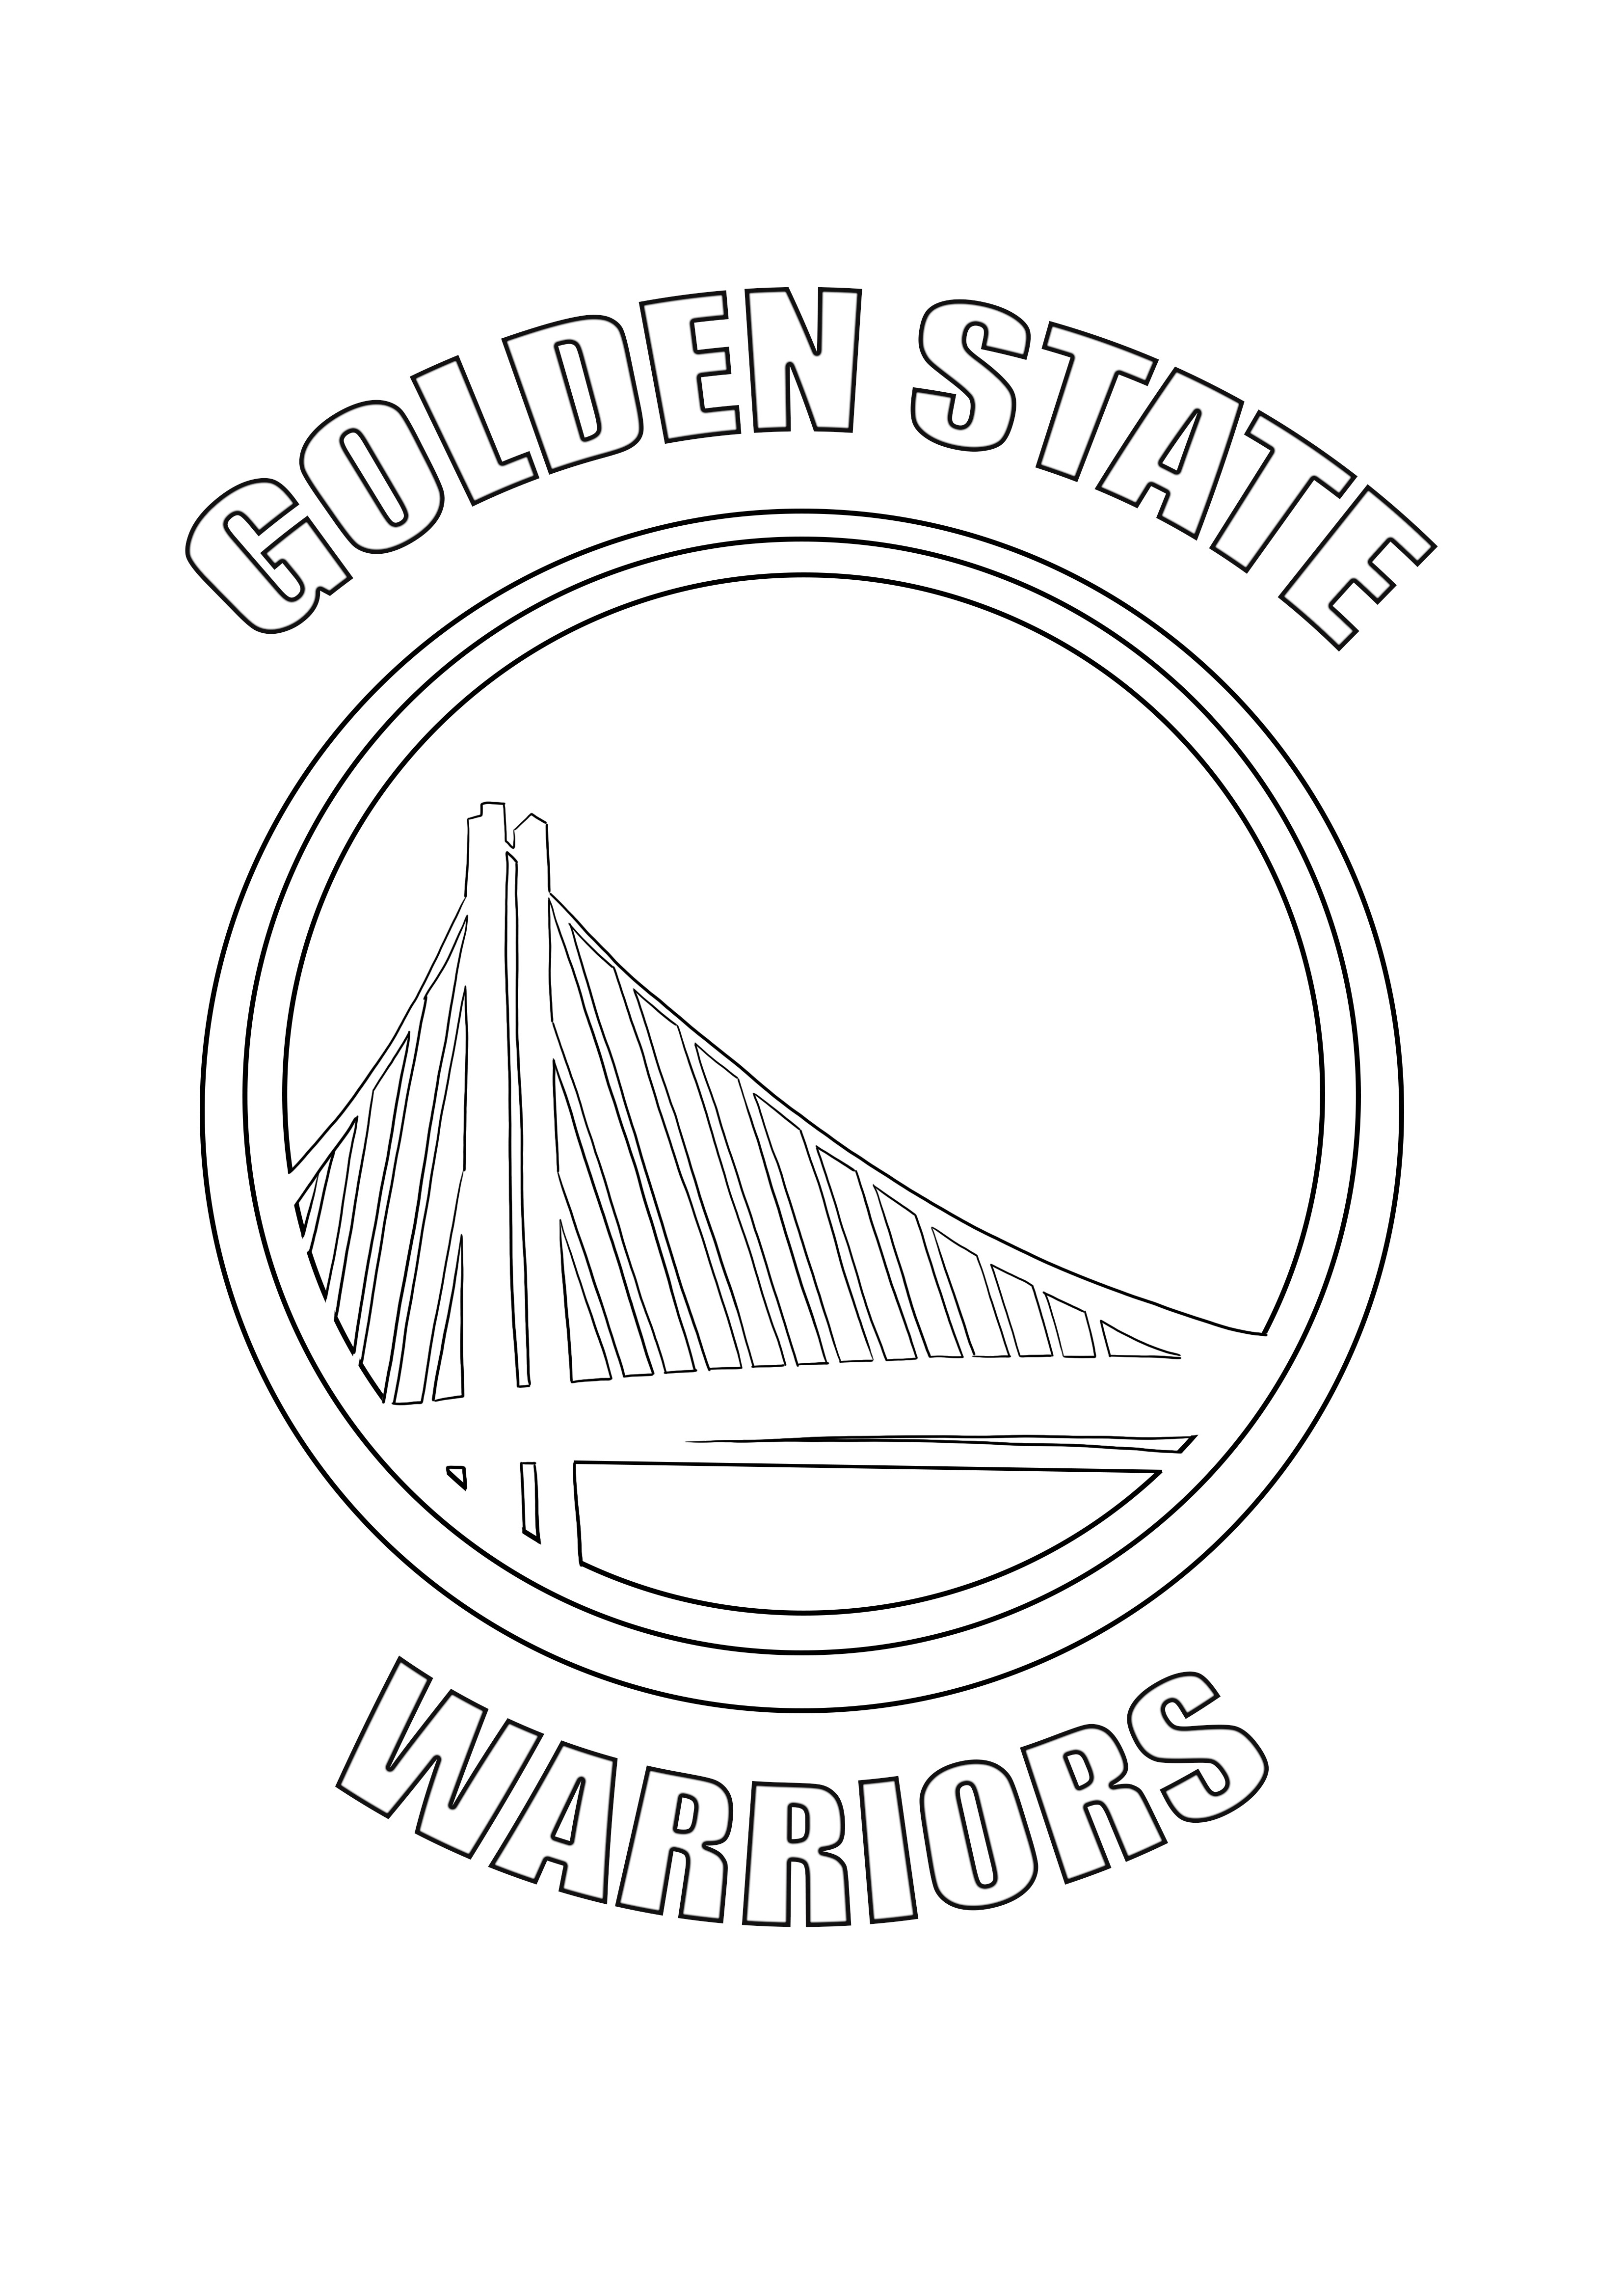 ゴールデンステイト・ウォリアーズの無料印刷とぬりえページのロゴ